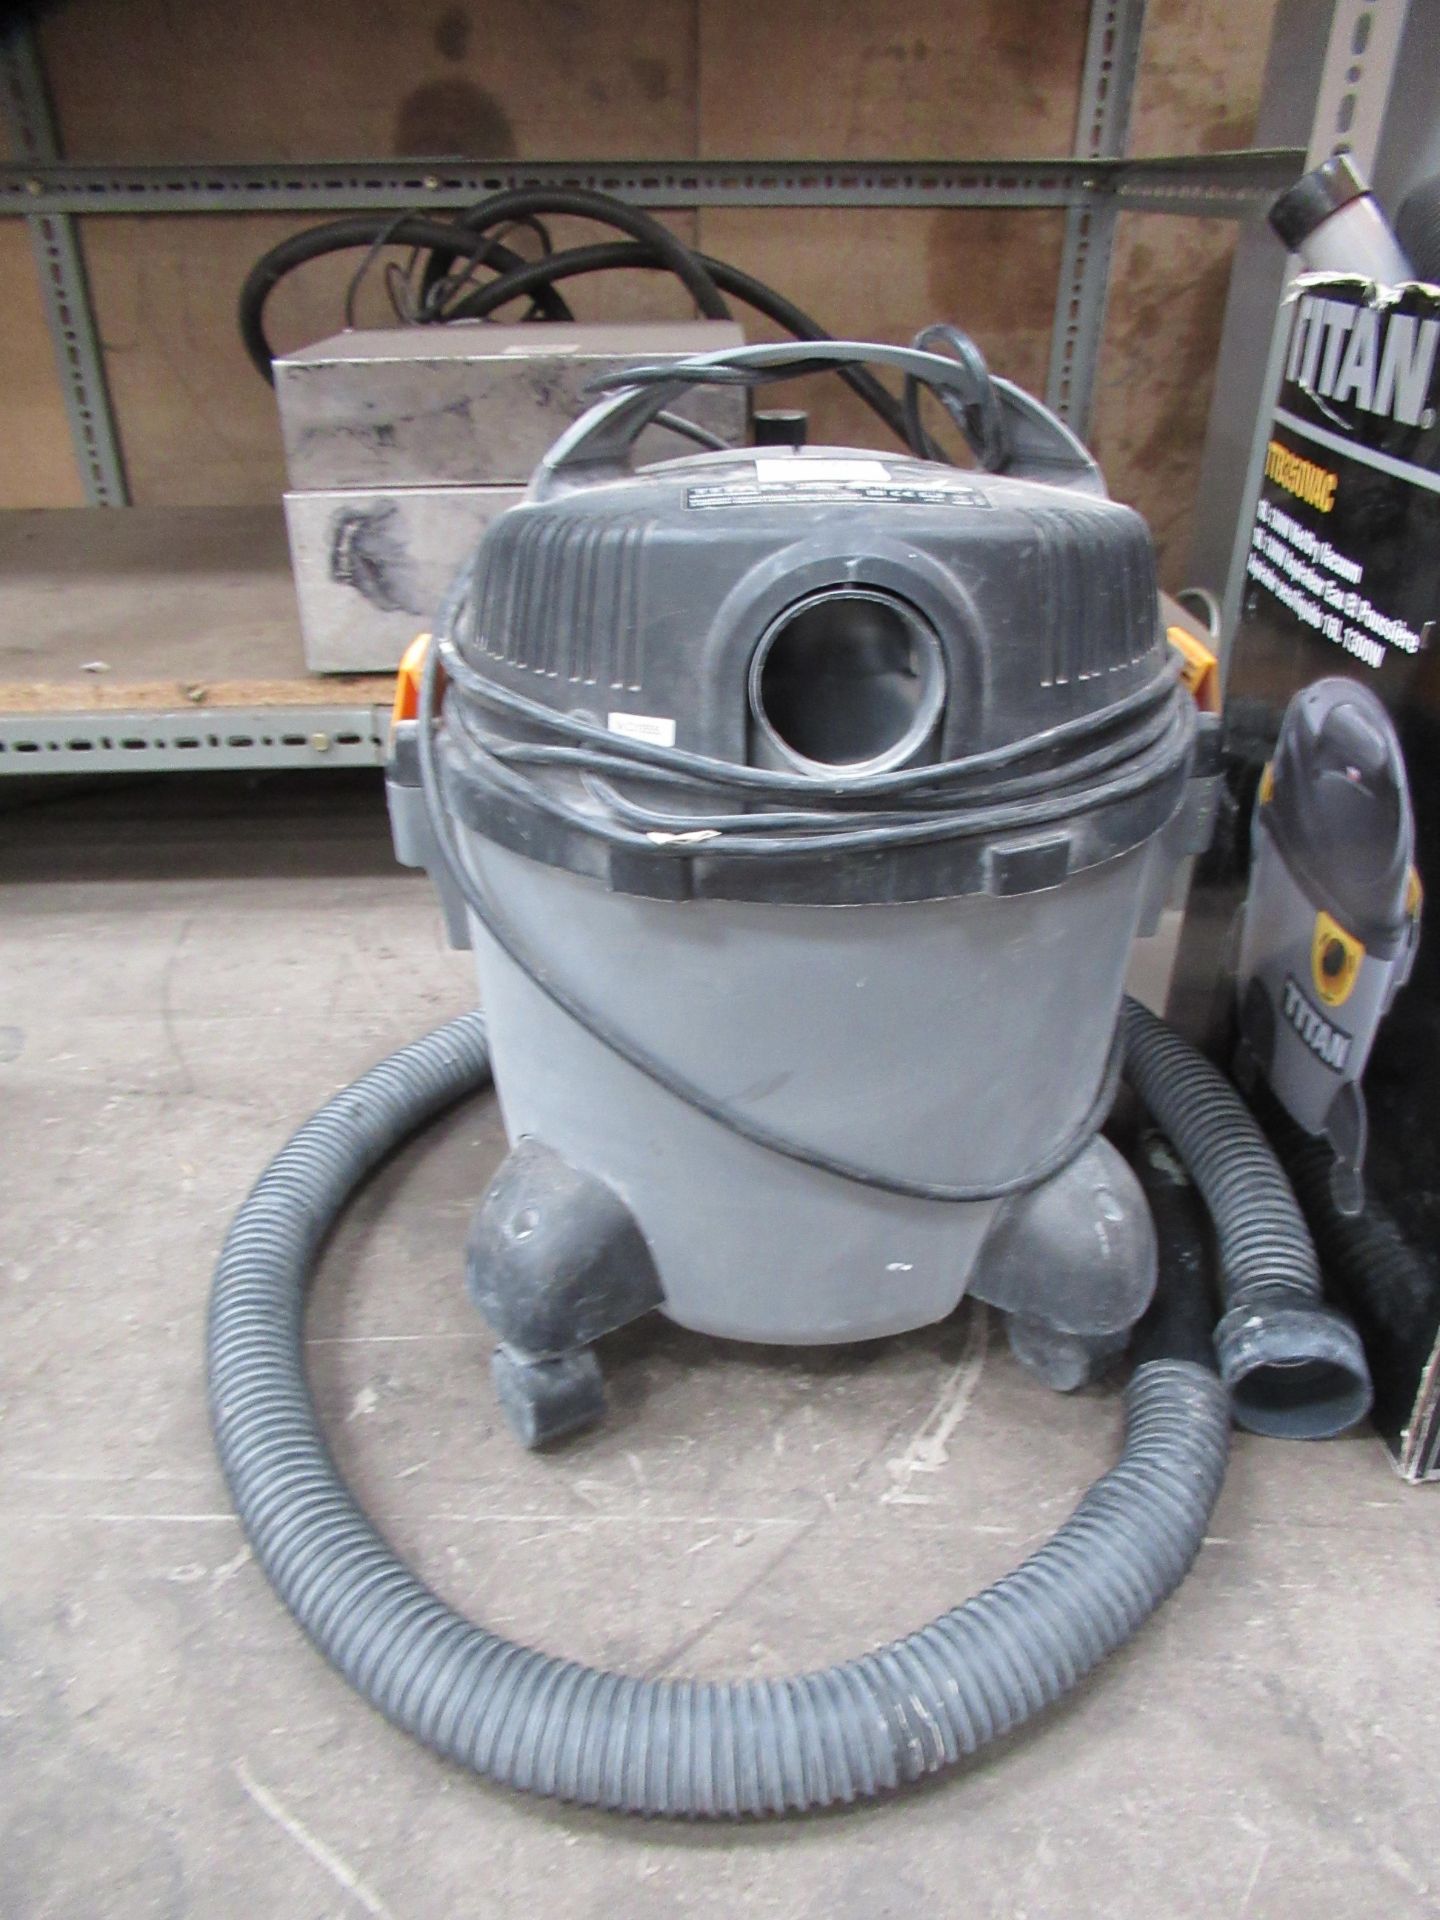 A 240V Titan wet/dry vacuum cleaner - Bild 2 aus 4